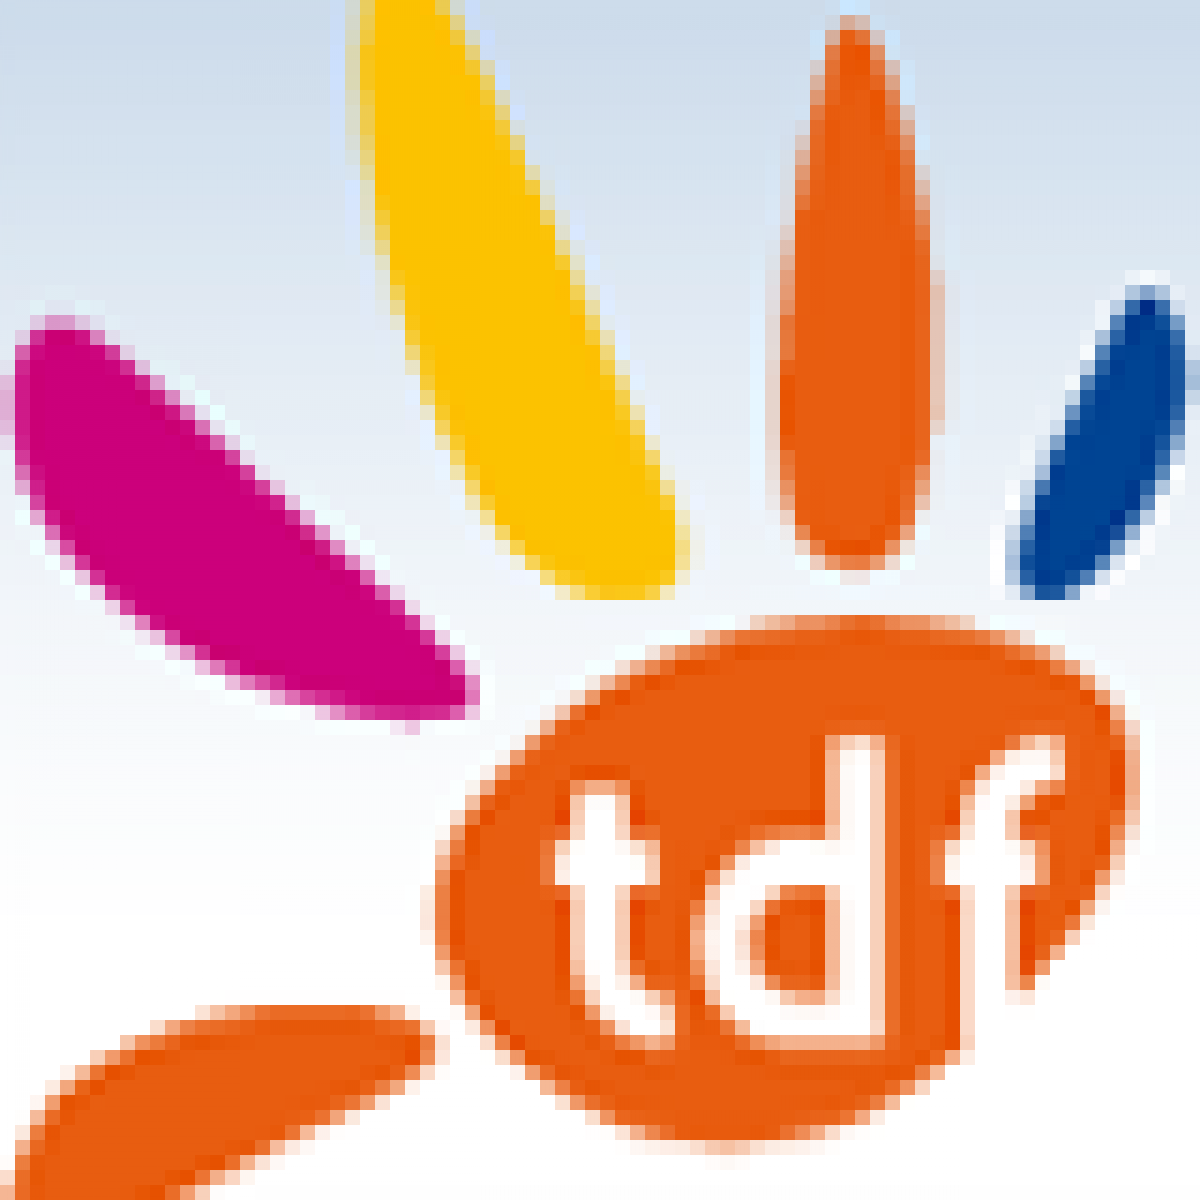 TDF lance TDF 3.0, un plan de développement pour répondre aux enjeux du numérique